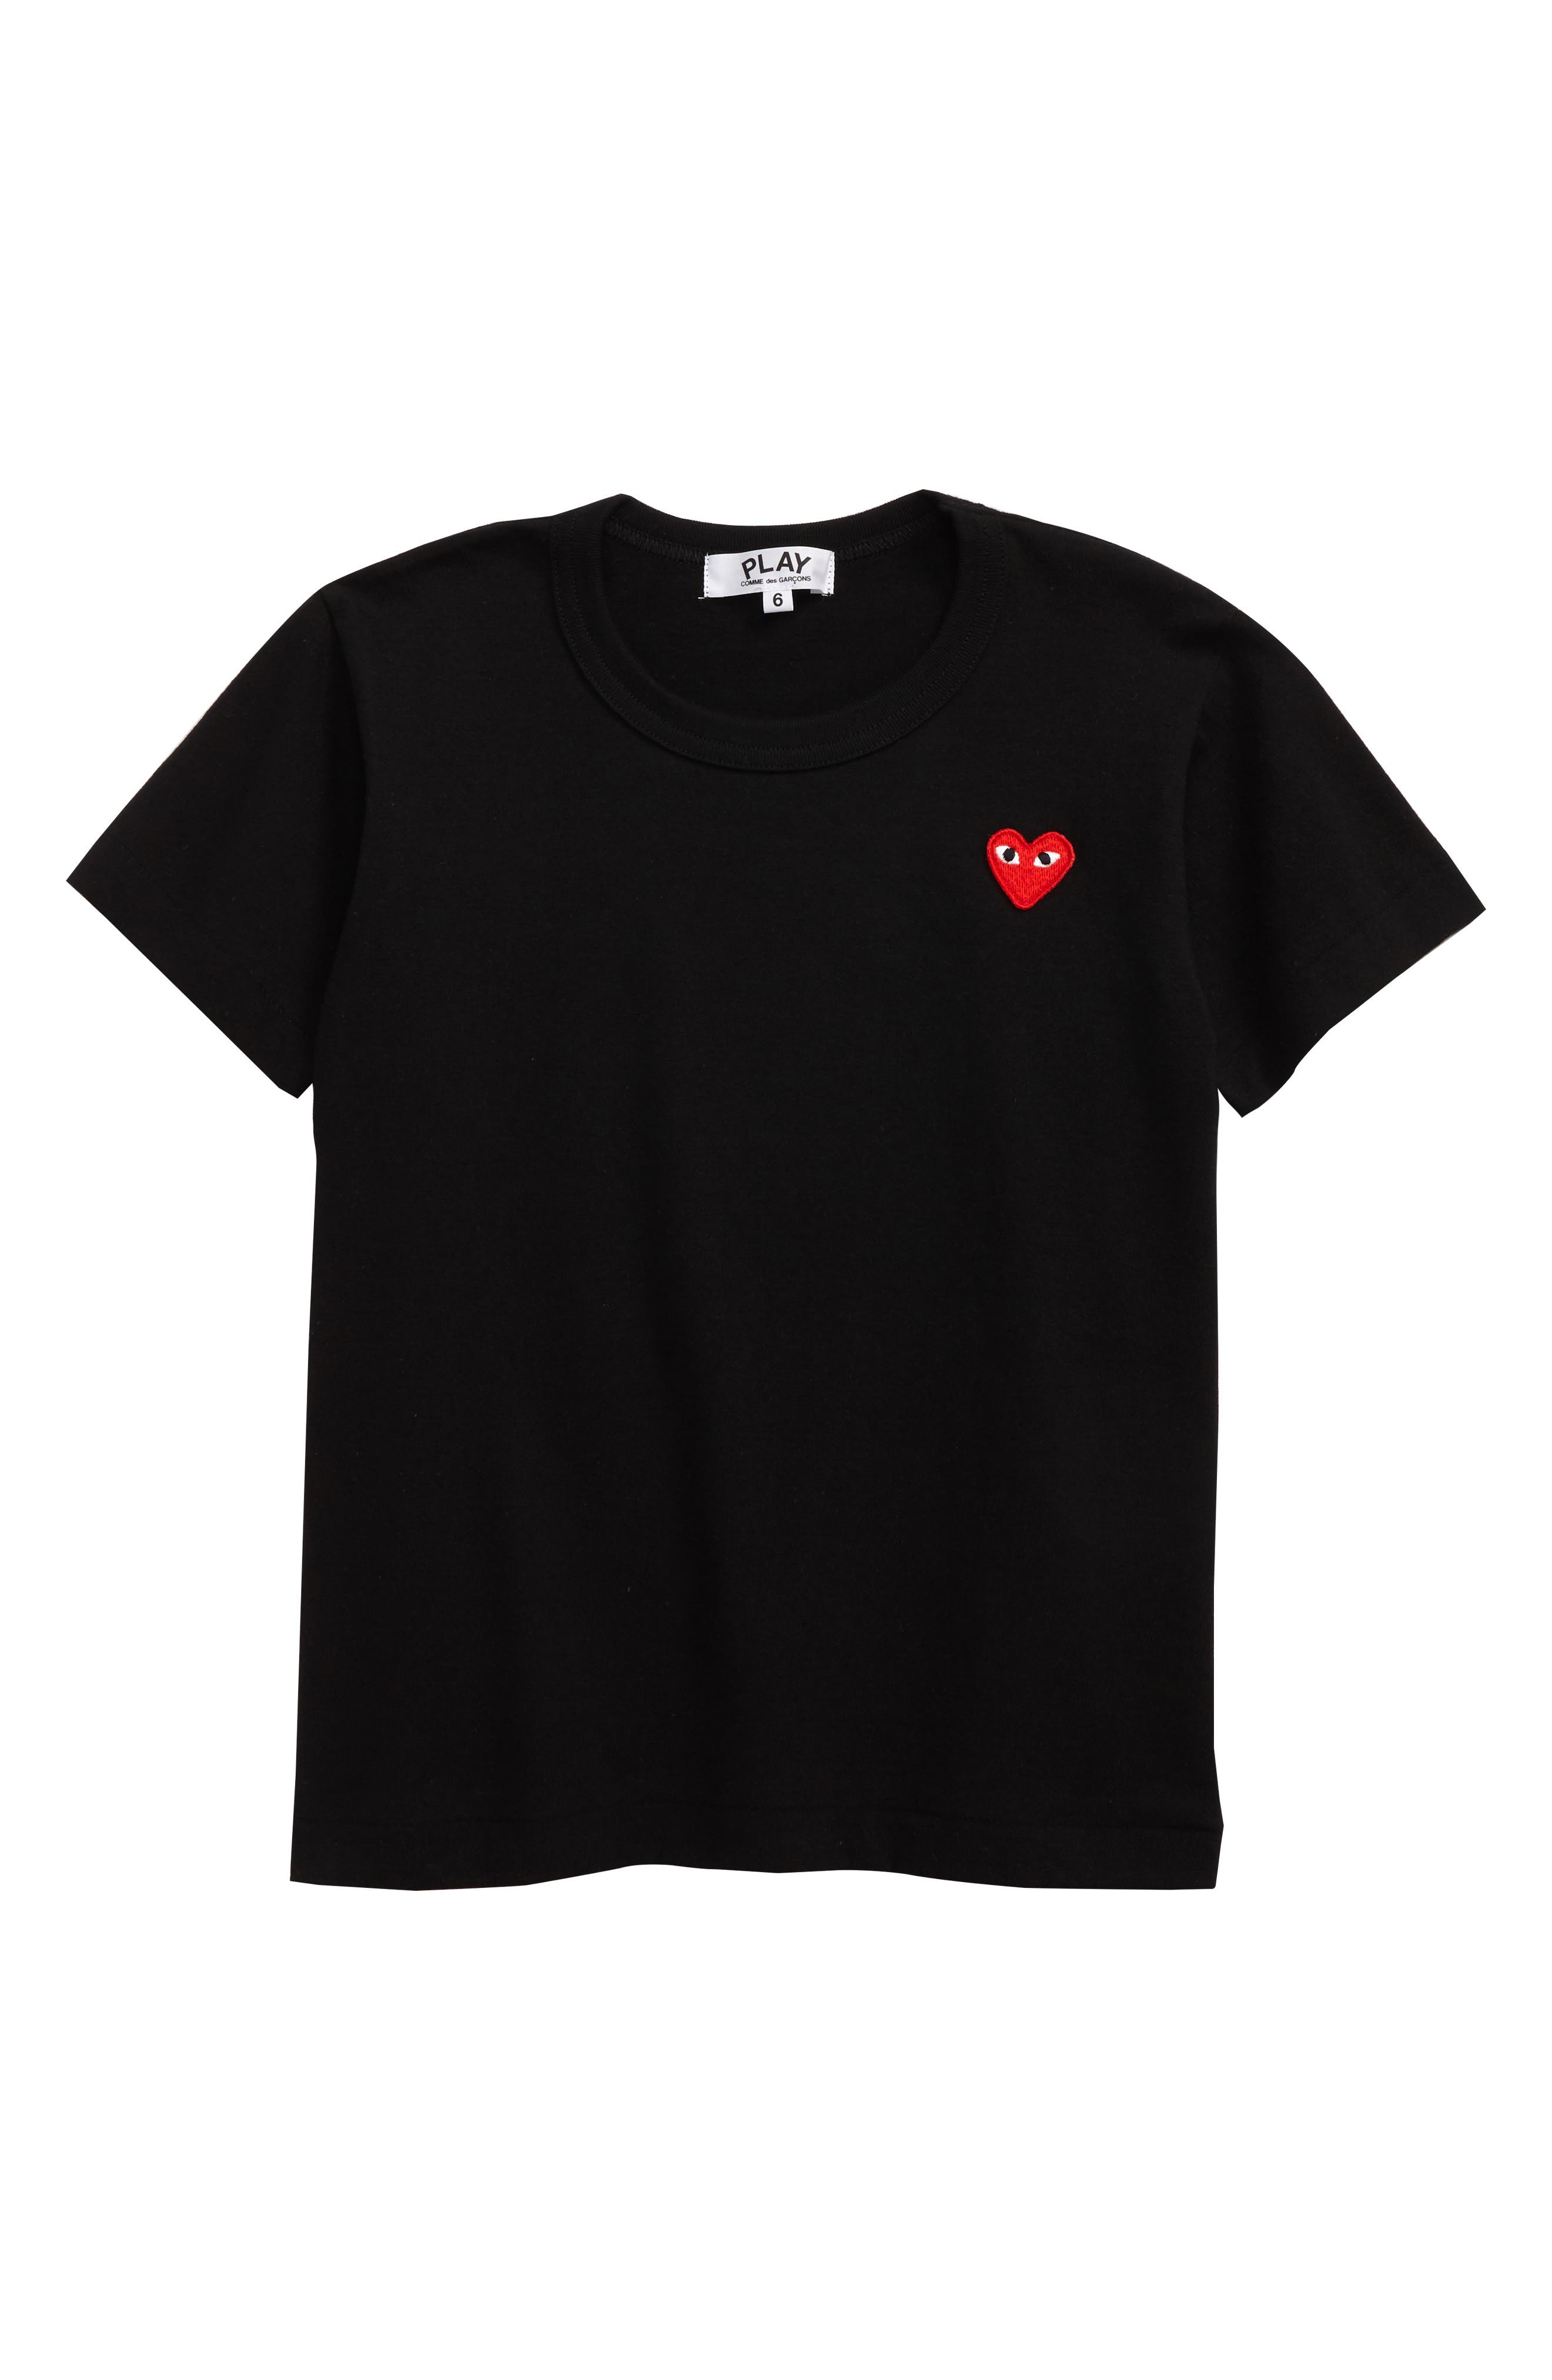 converse love heart t shirt